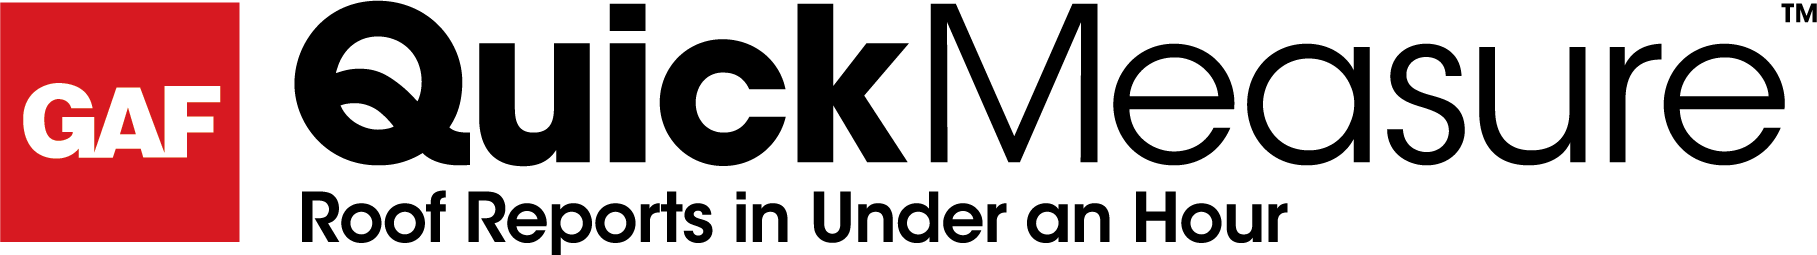 gaf quickmeasure logo